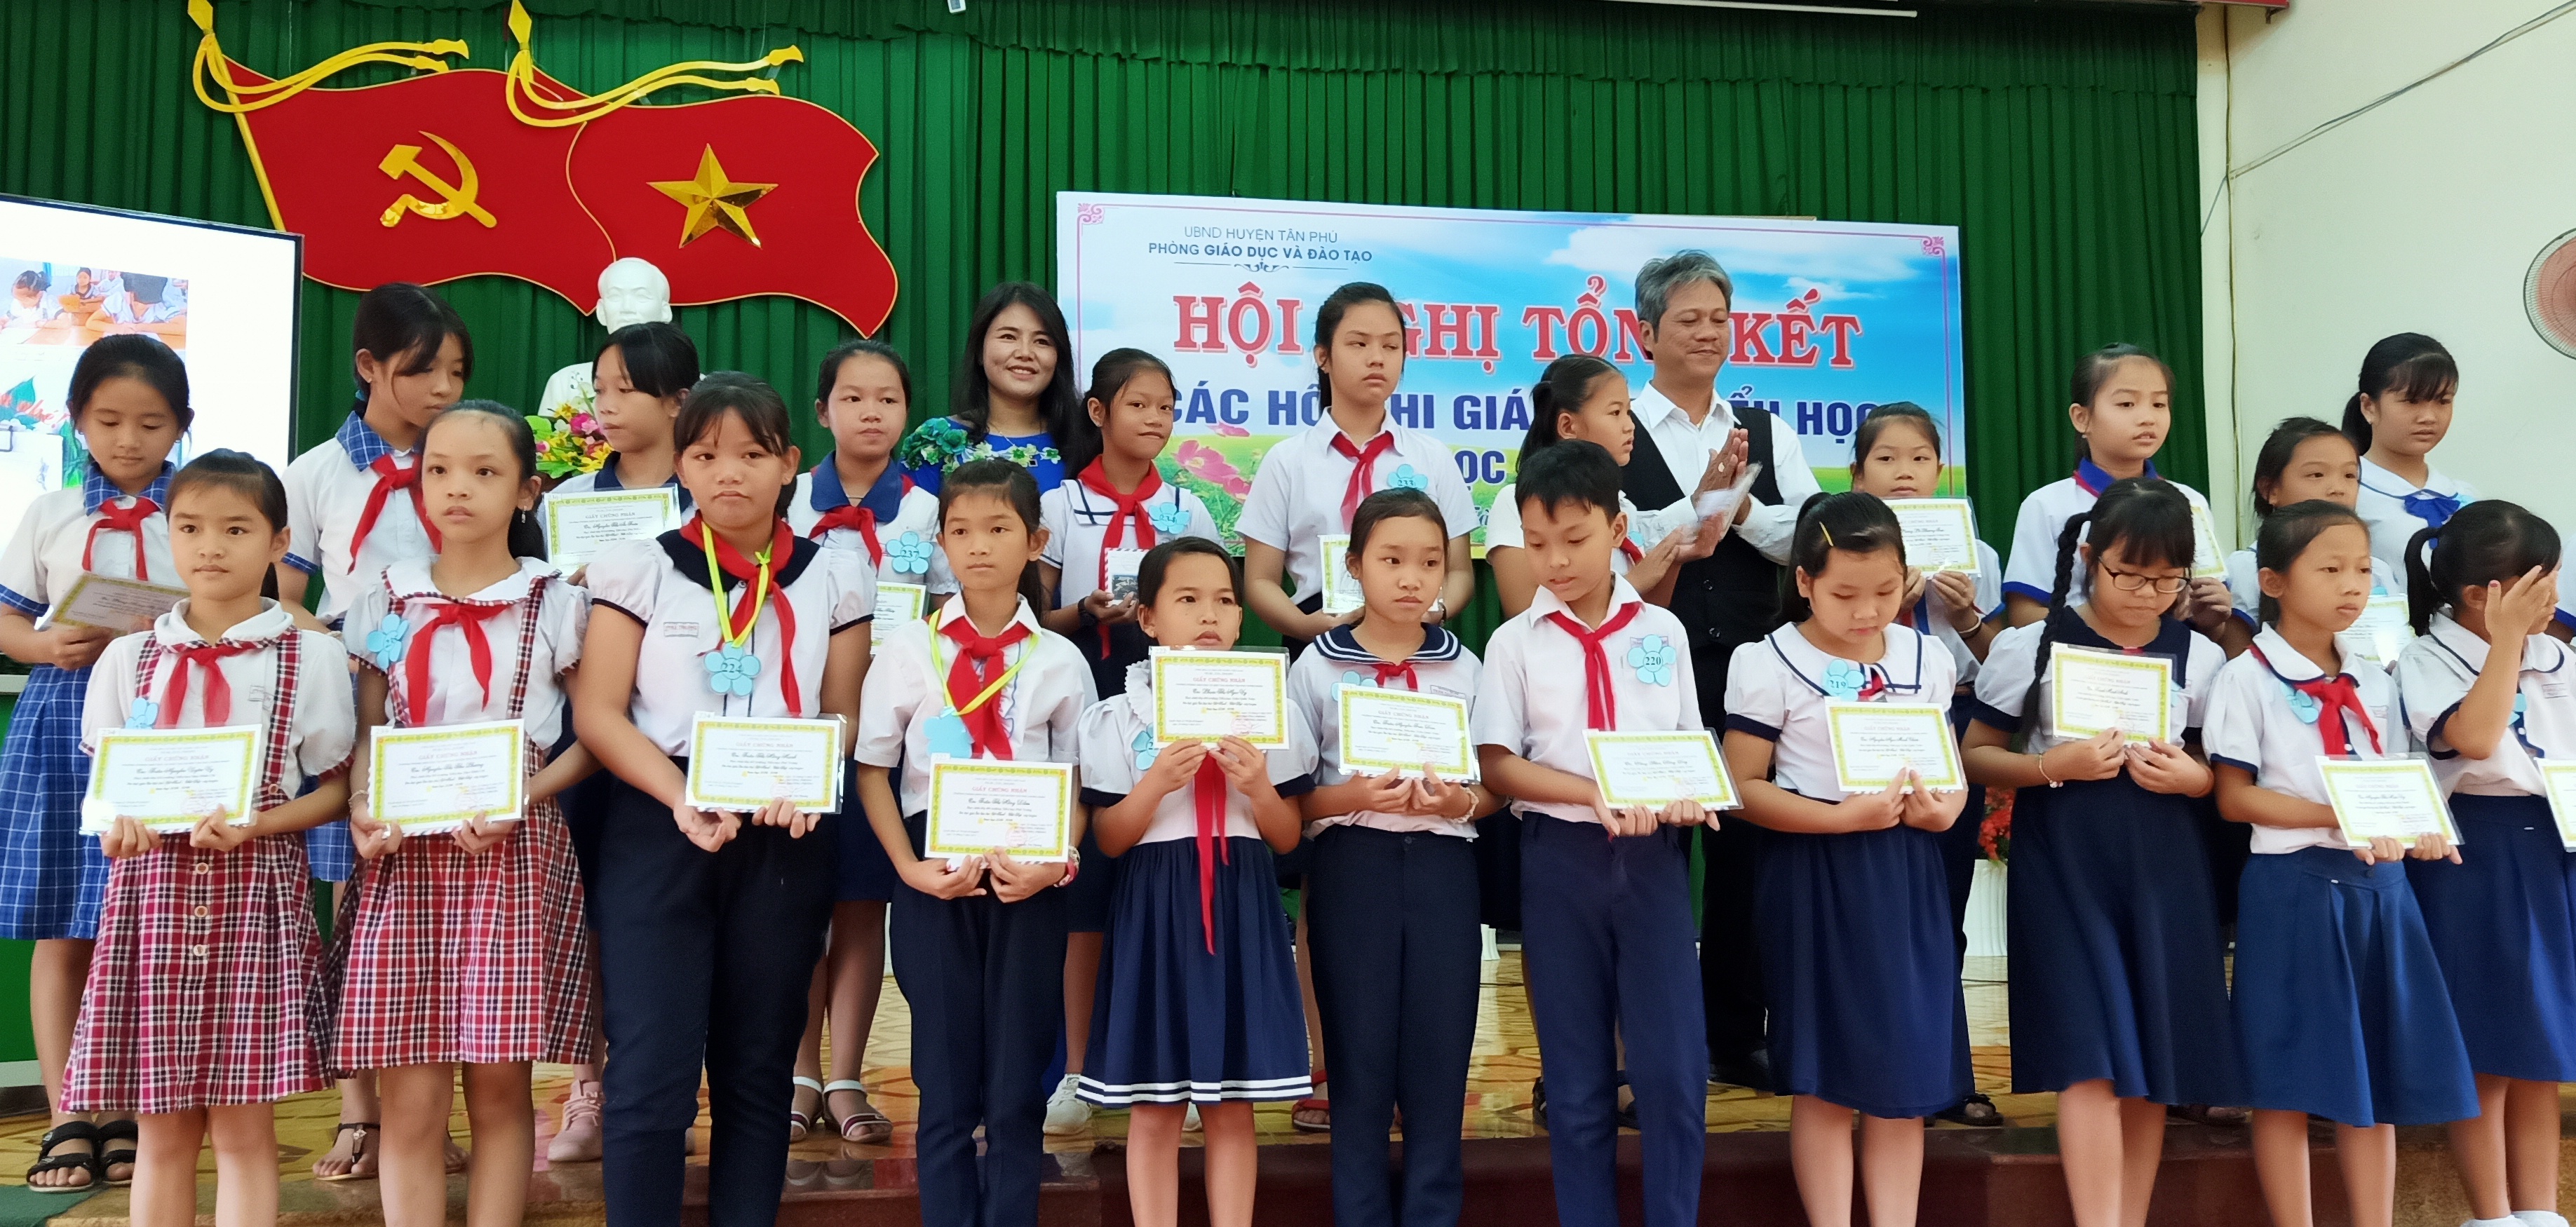 Phòng GDĐT huyện Tân Phú tổ chức tổng kết các hội thi giáo dục tiểu học năm học 2018-2019